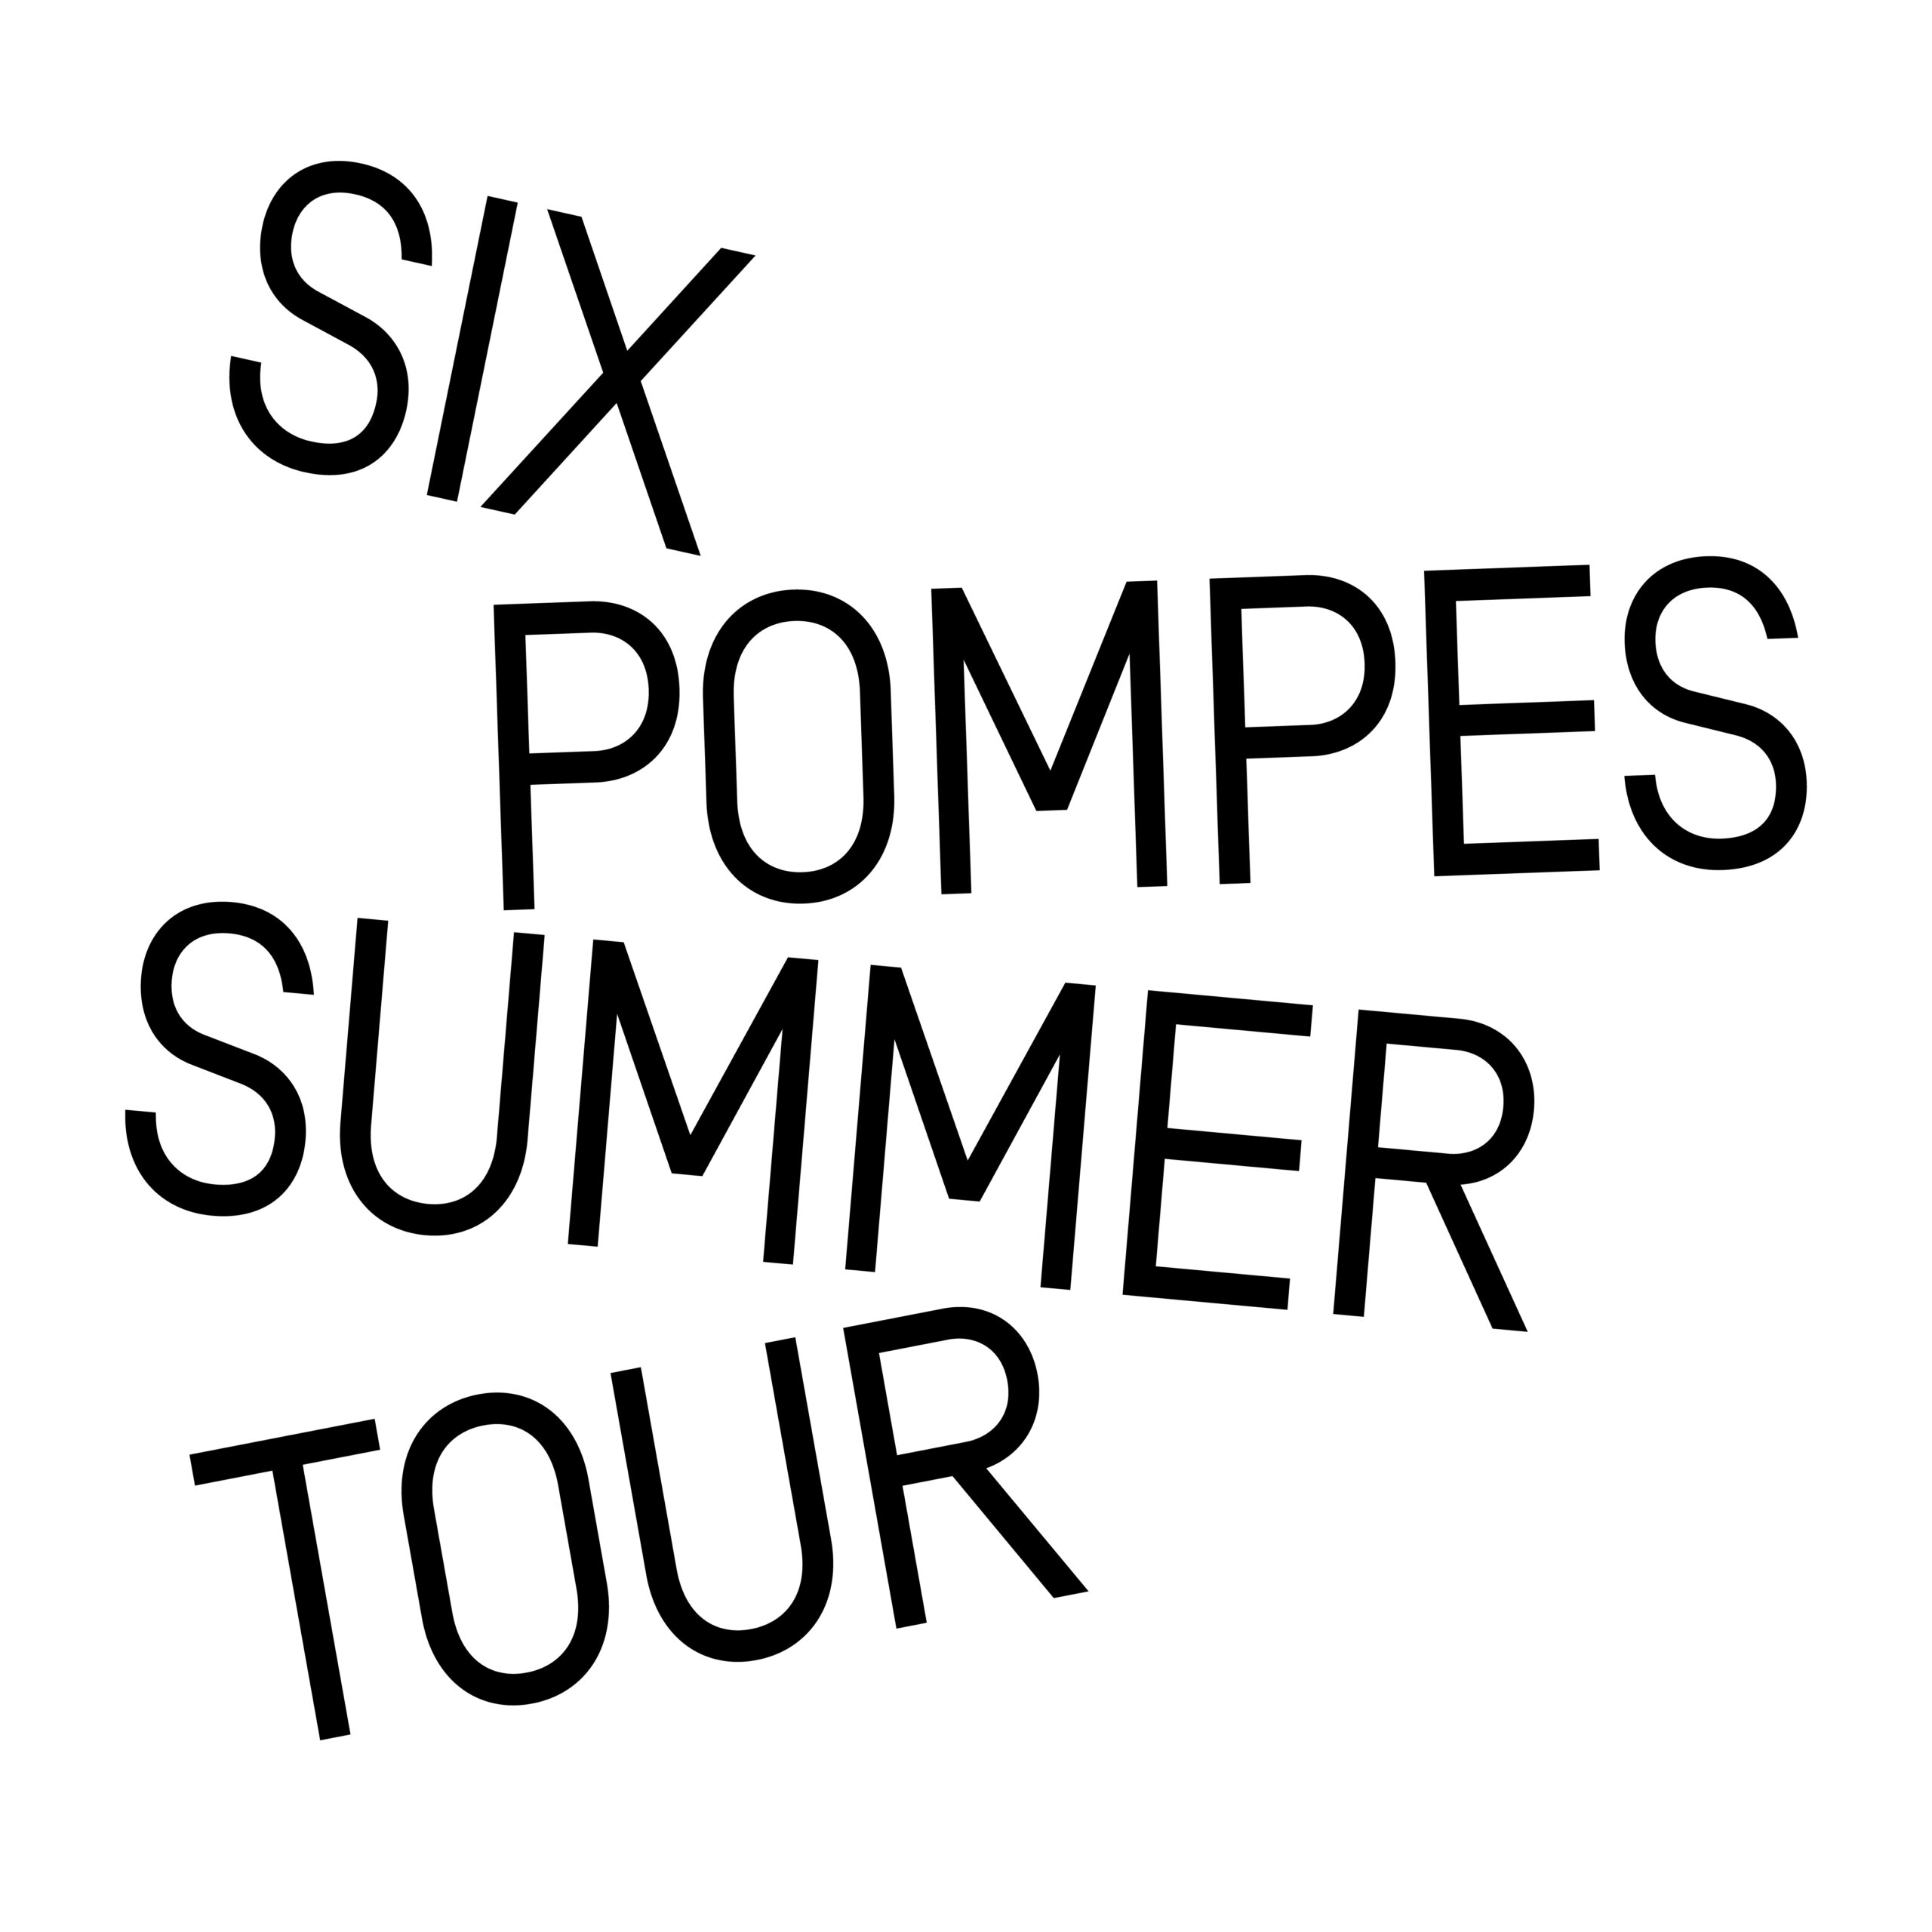 SIX POMPES - SUMMER TOUR